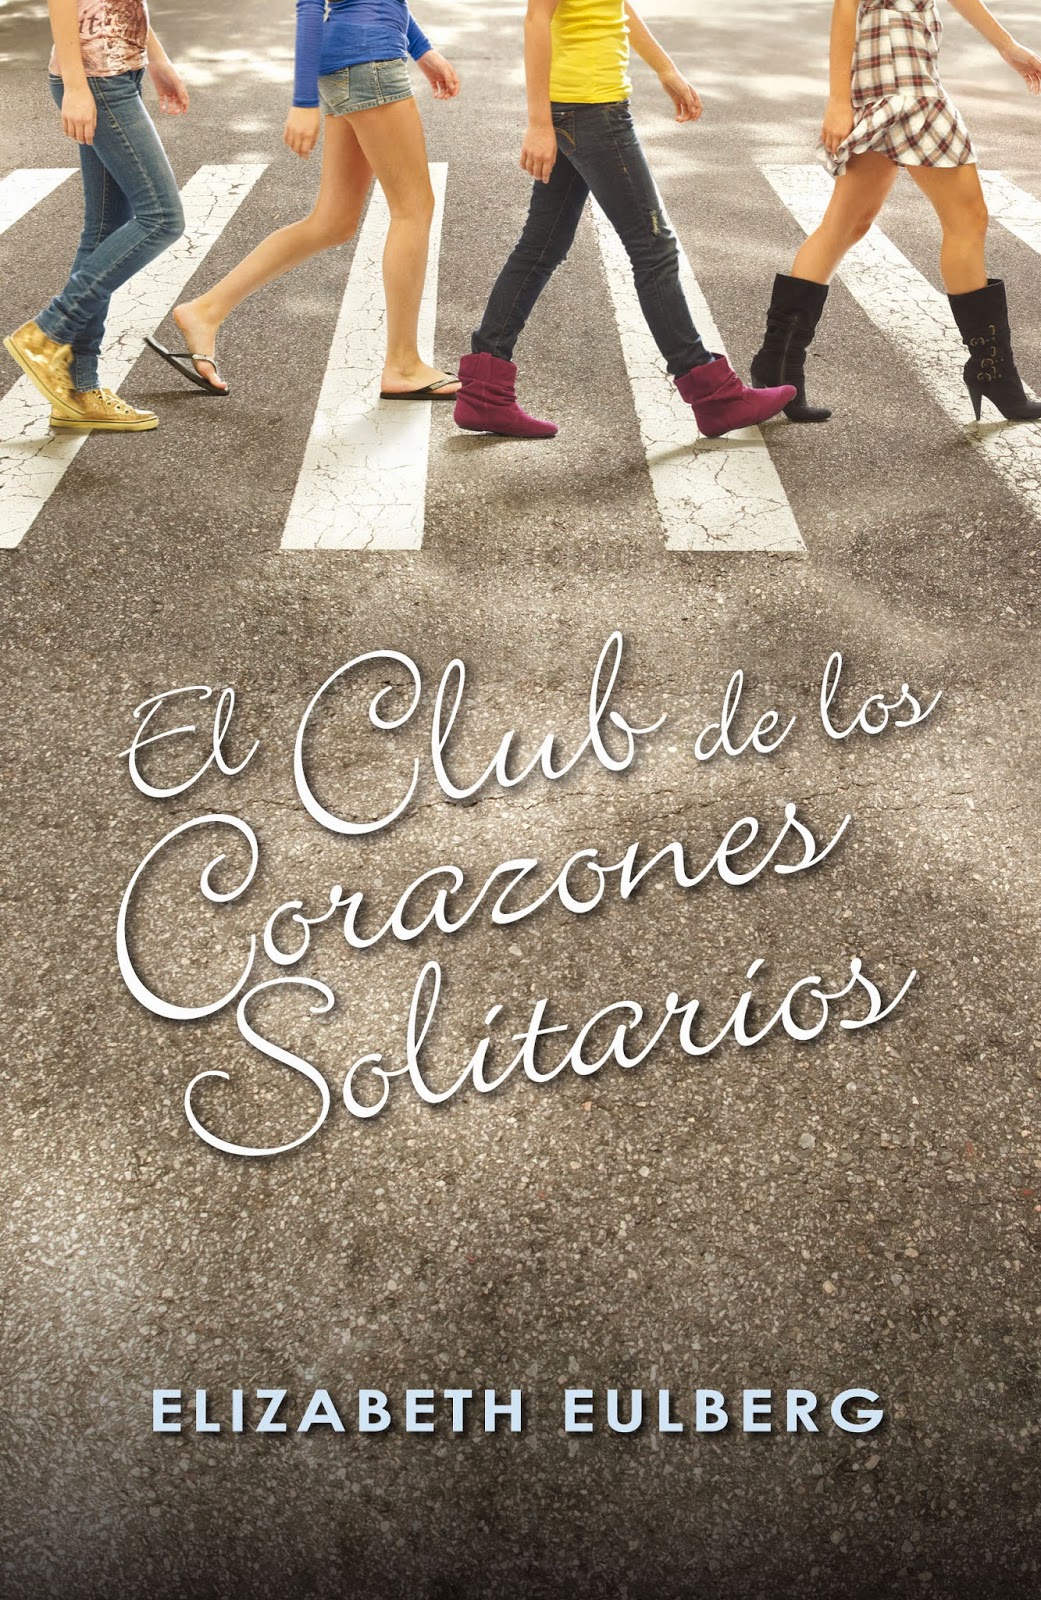 http://www.eltemplodelasmilpuertas.com/critica/club-corazones-solitarios/416/